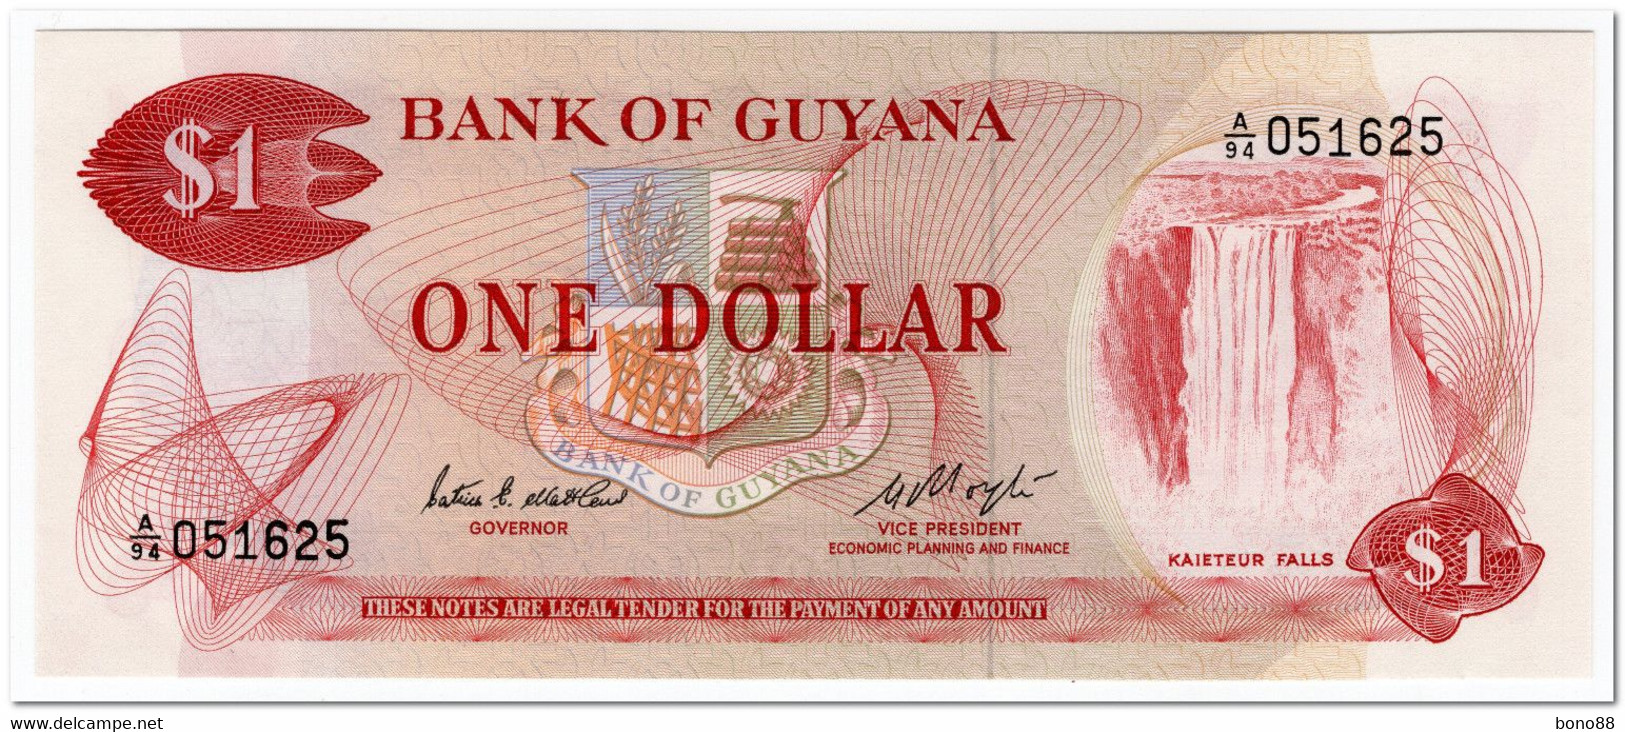 GUYANA,1 DOLLAR,1983,P.21e,UNC - Guyana